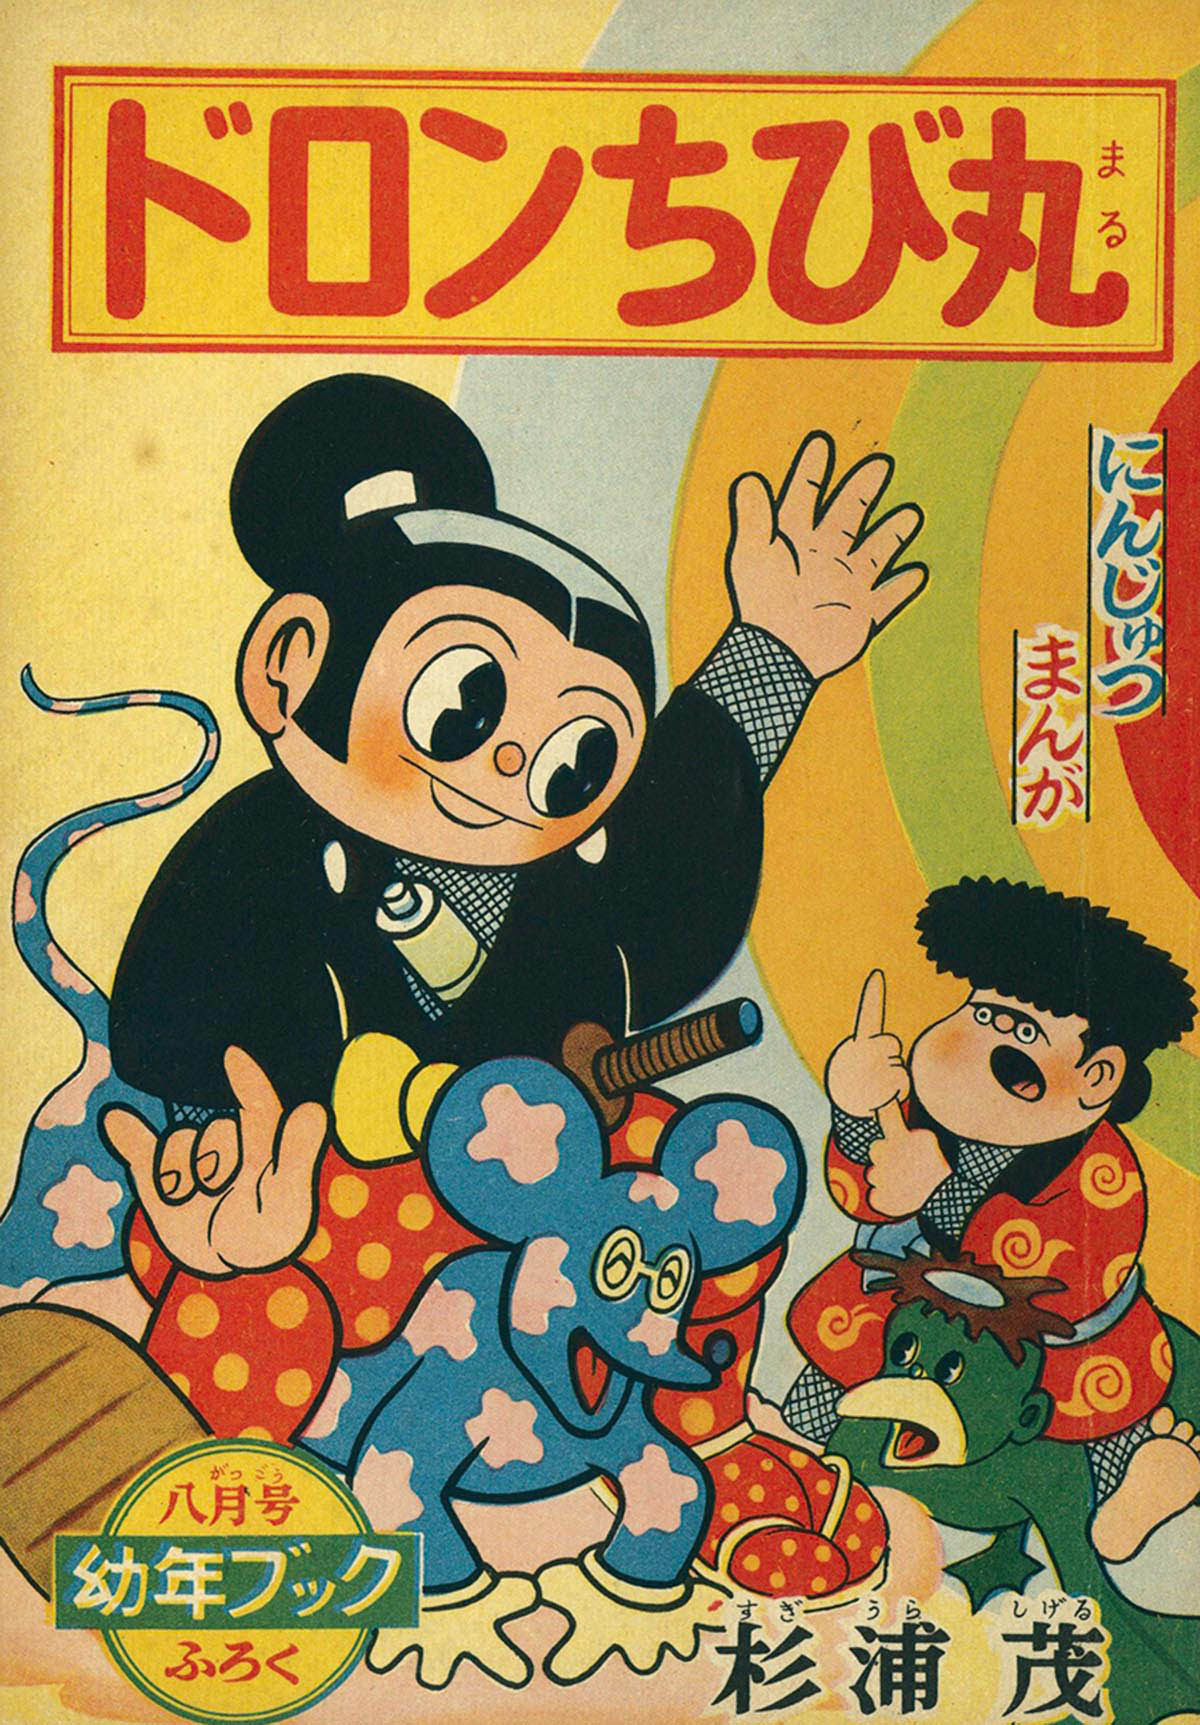 8006] 杉浦茂「ドロンちび丸」 1956(S31)08